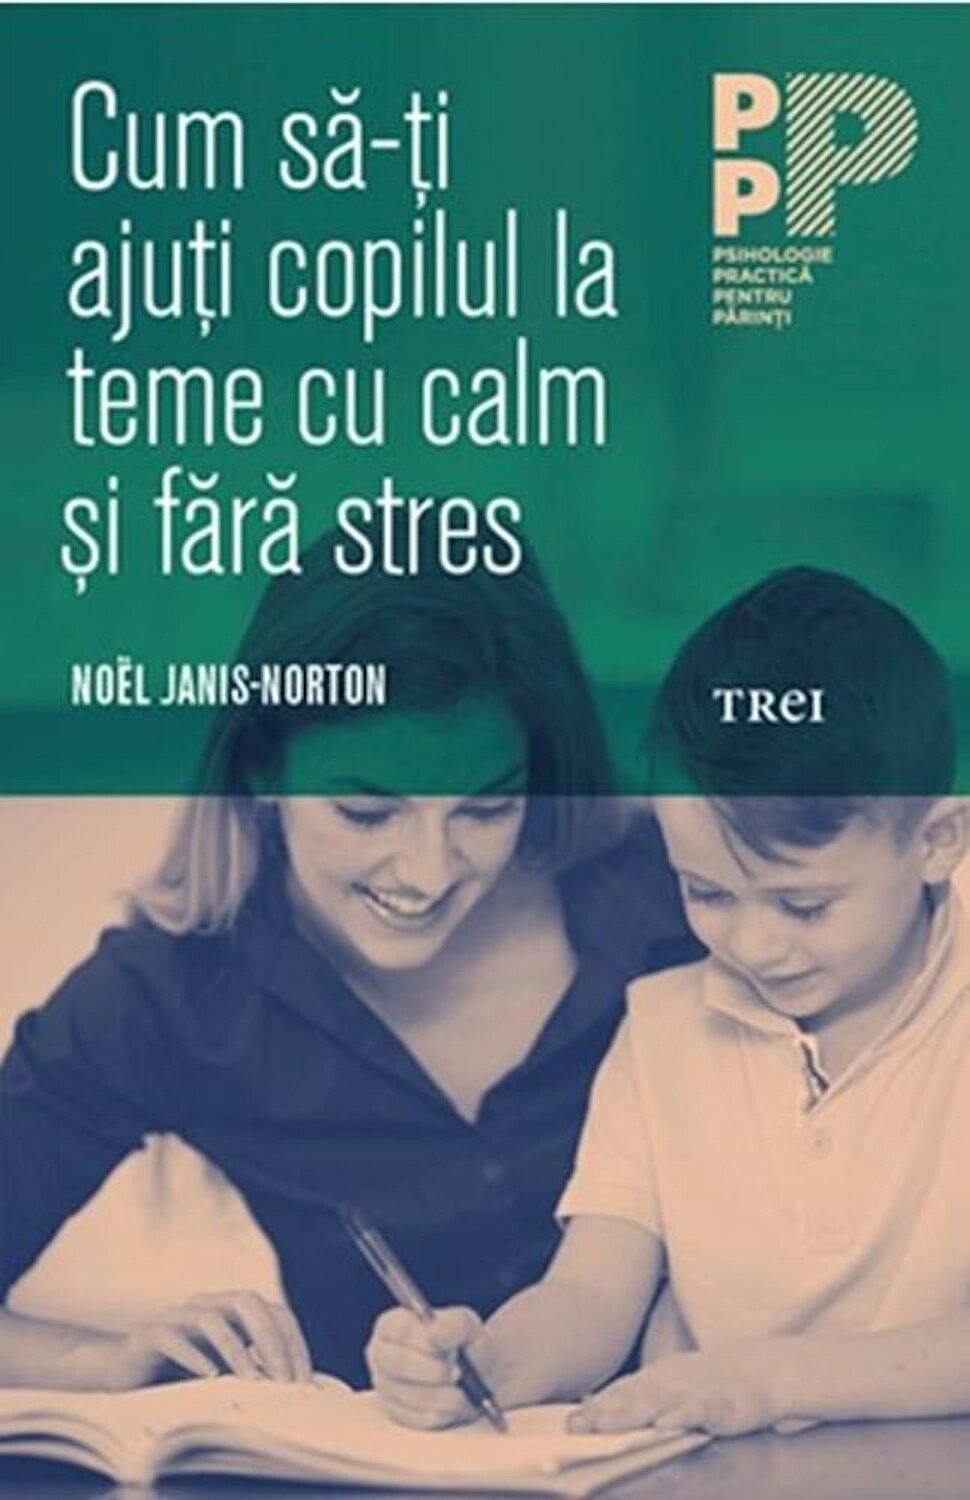 Cum sa-ti ajuti copilul la teme cu calm si fara stres | Noel Janis-Norton De La Carturesti Carti Dezvoltare Personala 2023-06-02